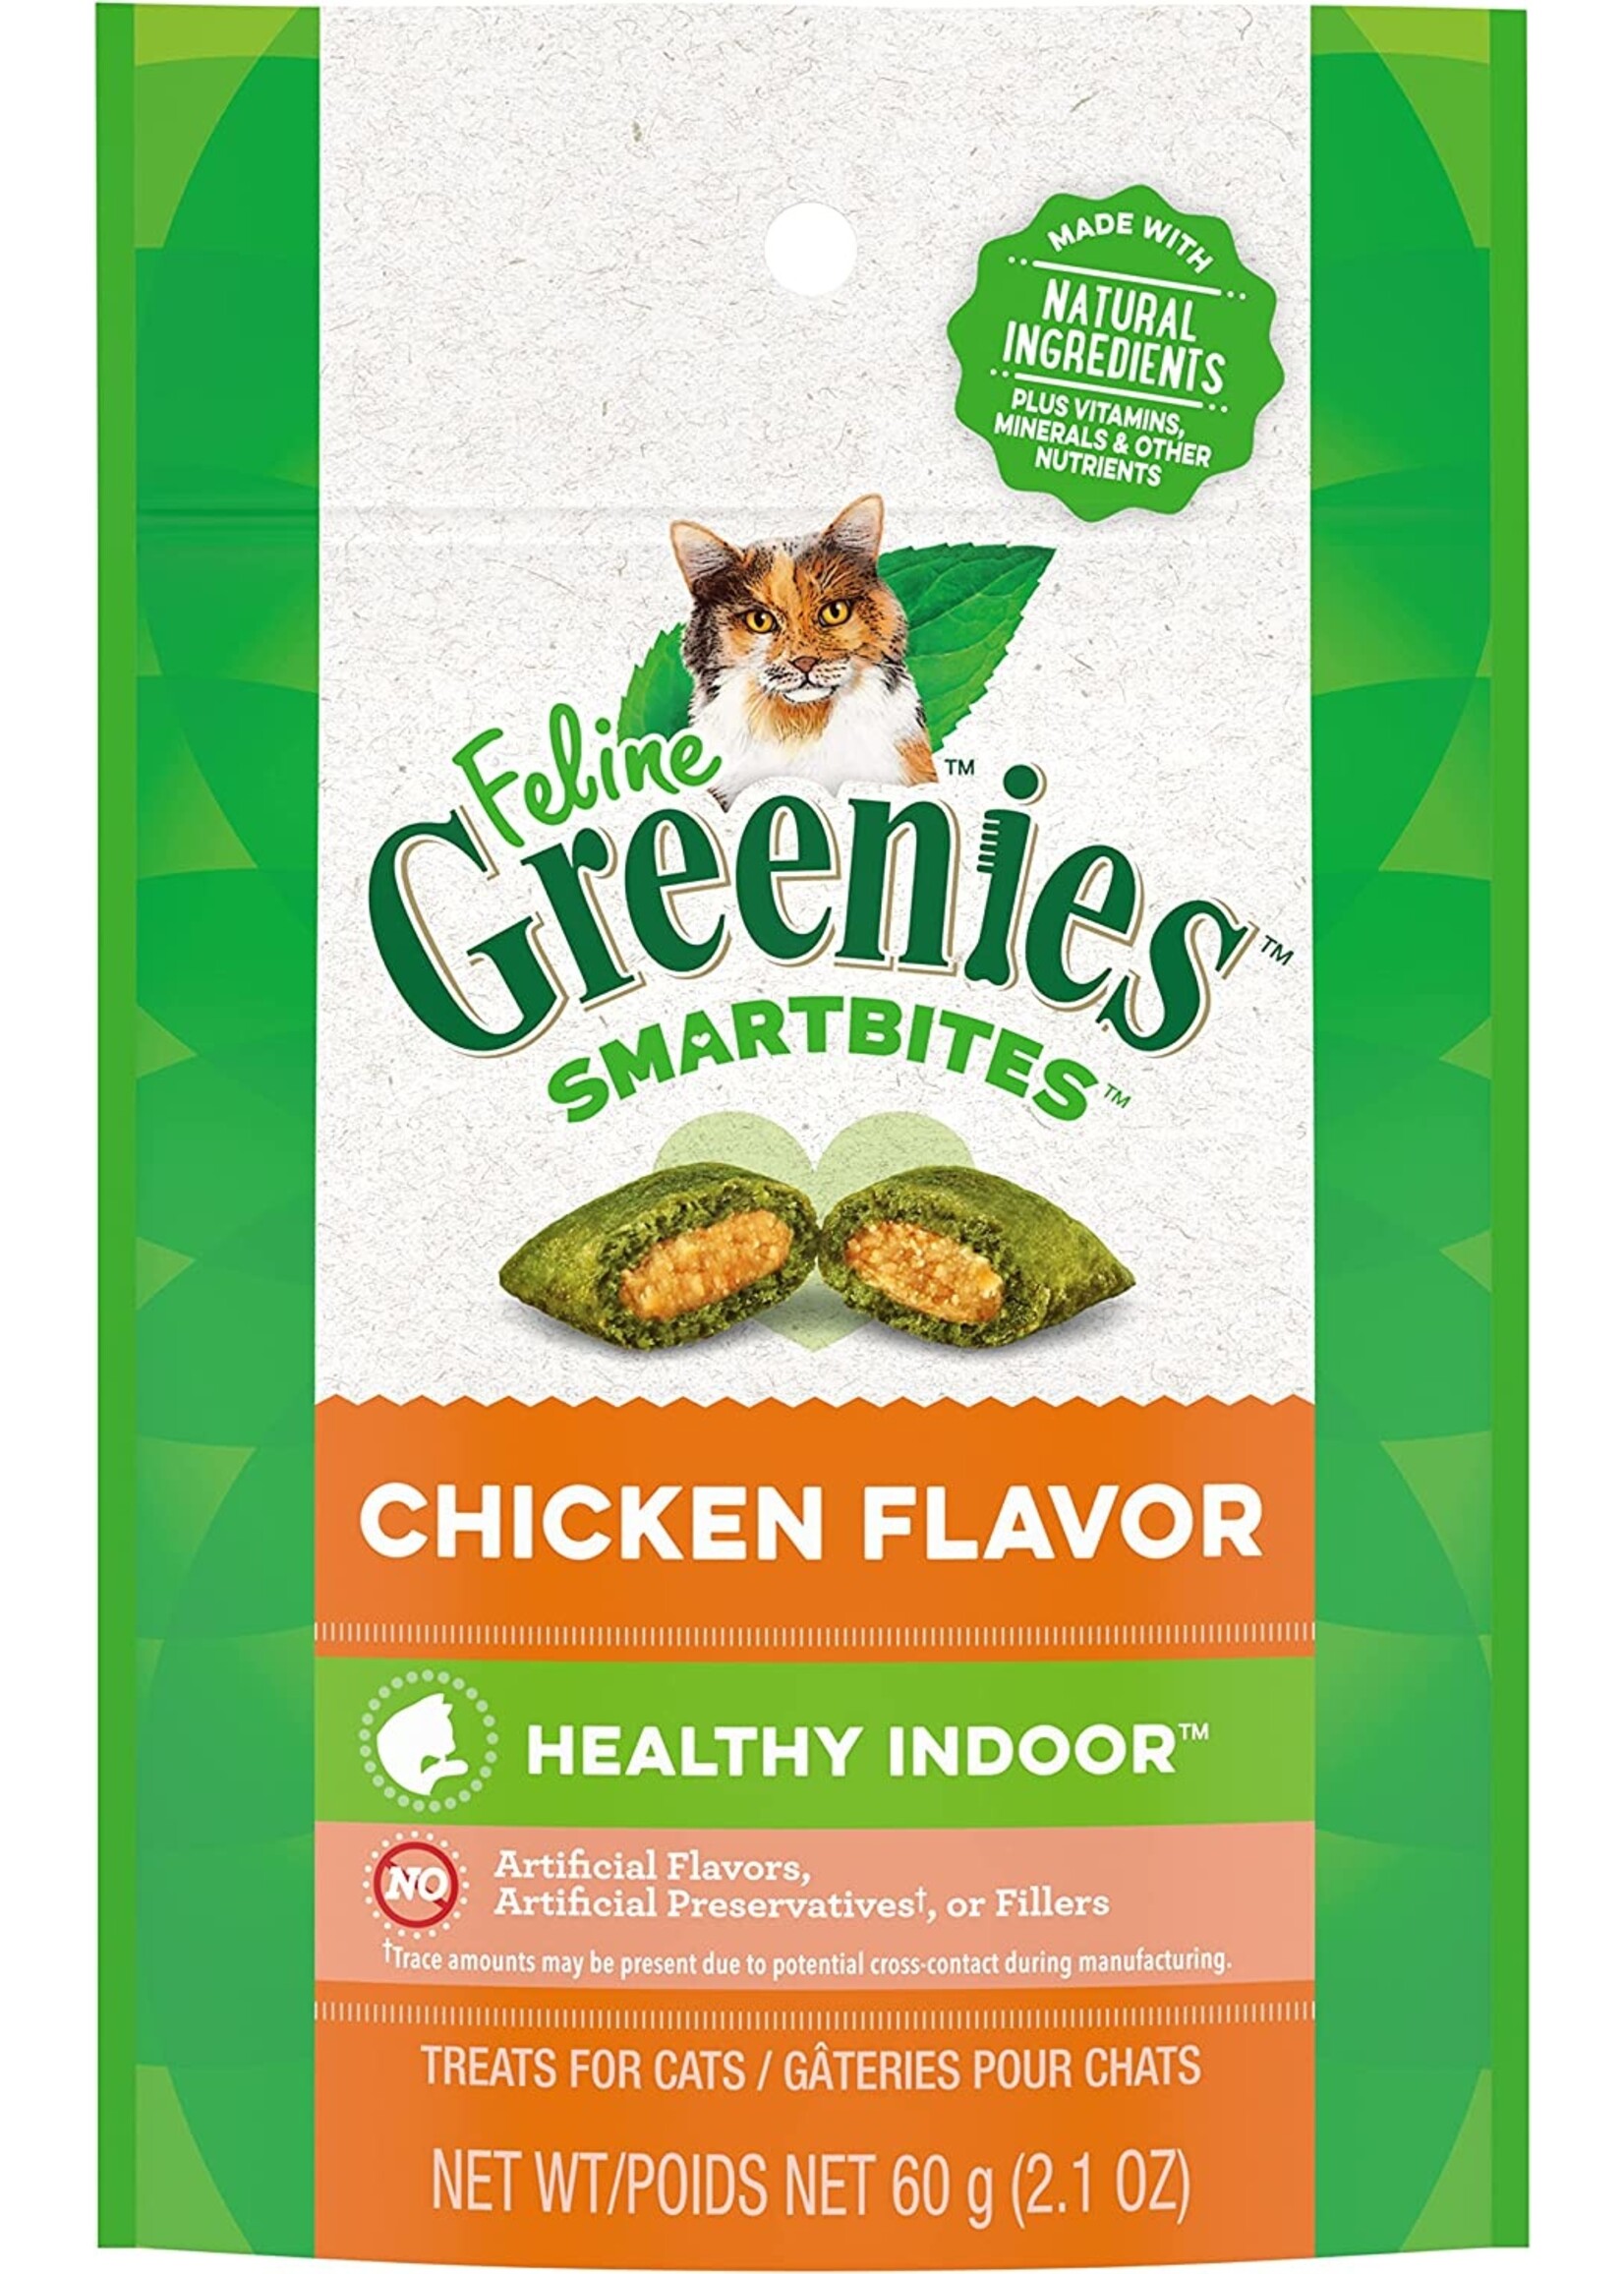 Greenies Greenies Smartbites Indoor Cat 2.1oz